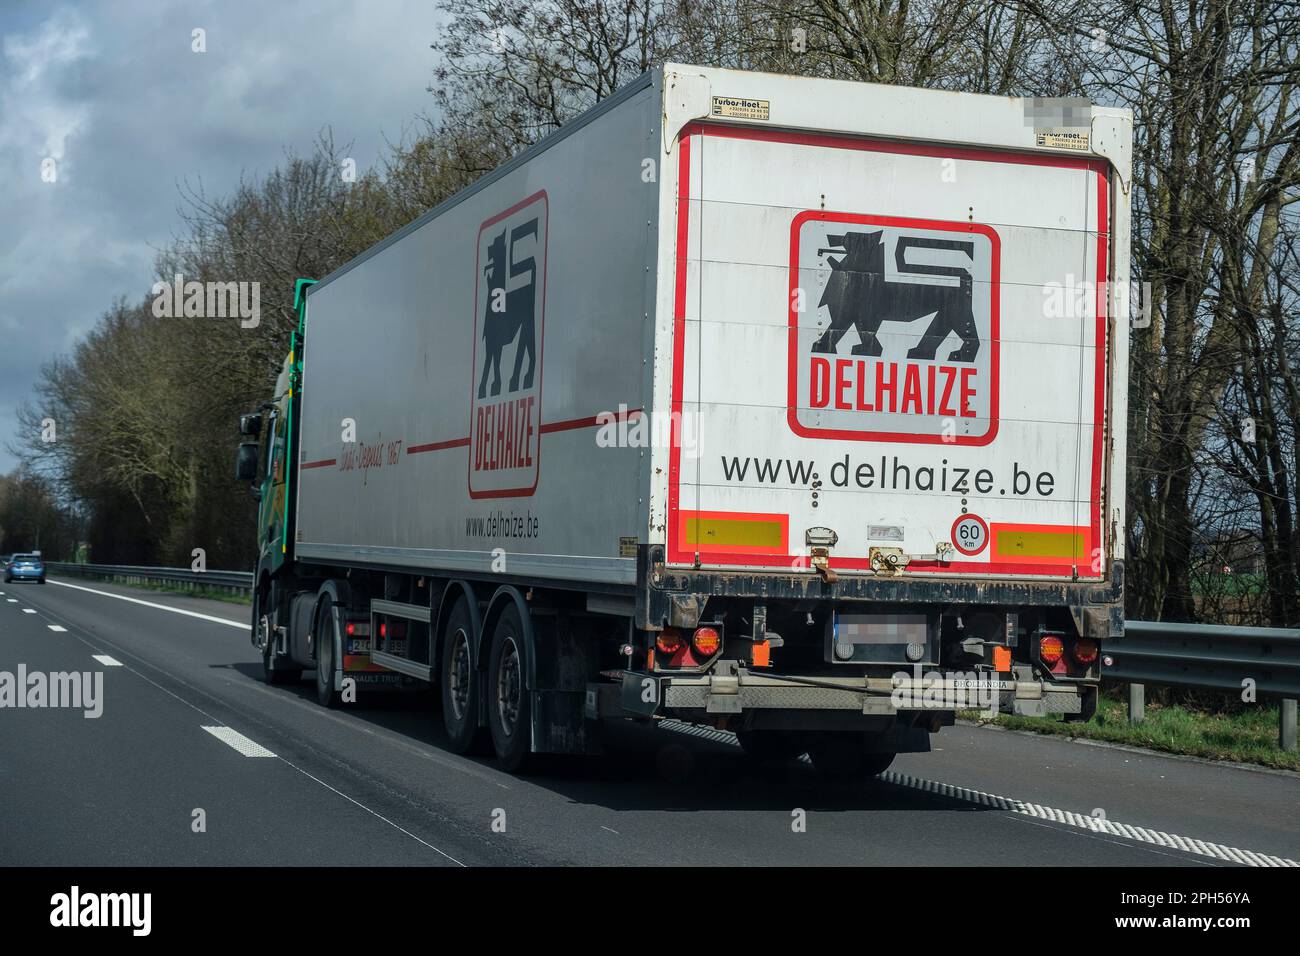 Lieferung Delhaize Truck auf der Straße | Camion de livraison des marchandises Delhaize sur Autoroute Stockfoto